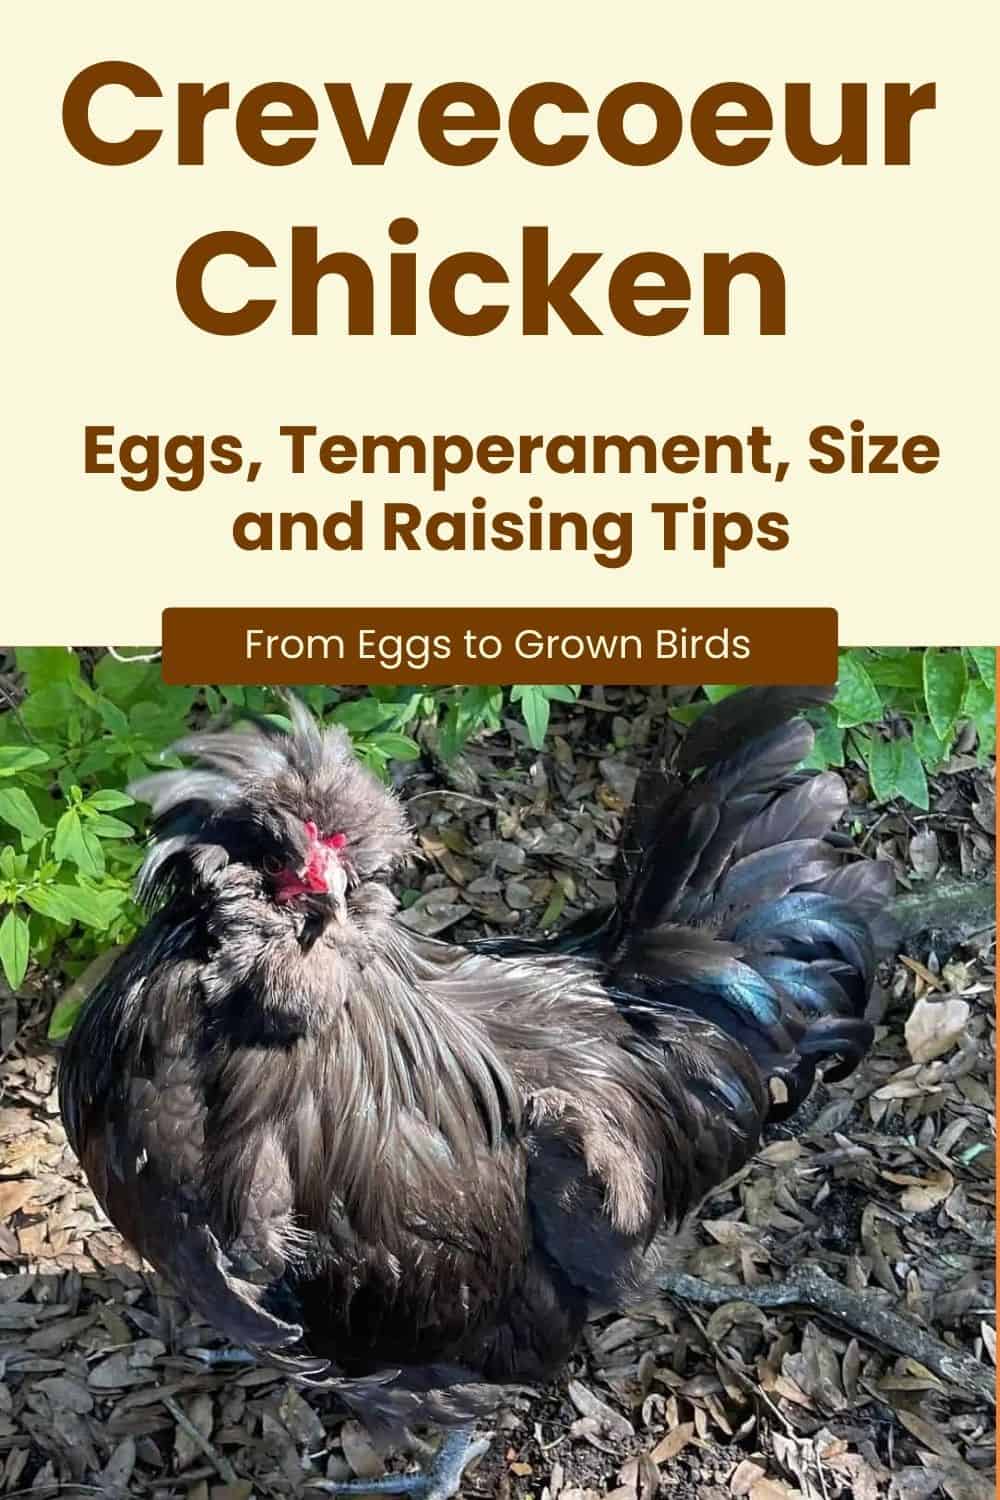 Crevecoeur Chicken breeds